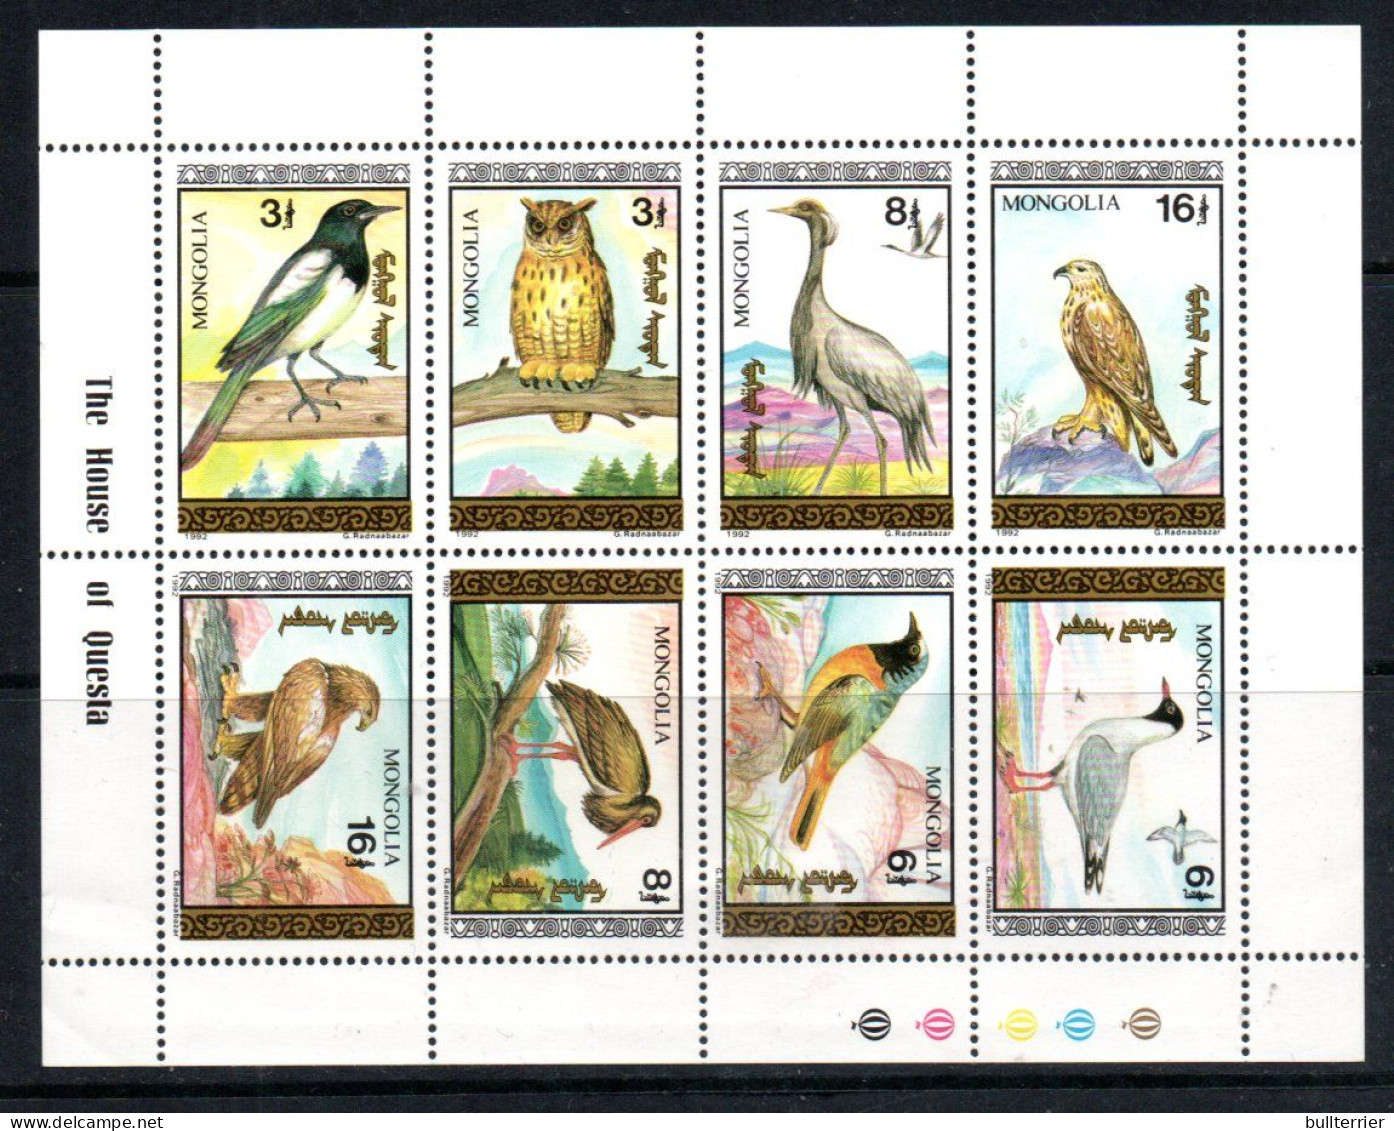 BIRDS - Mongolia- 1992- Birds Sheetlet Of 8 Mint Never Hinged, SG Cat £21.10 - Duiven En Duifachtigen